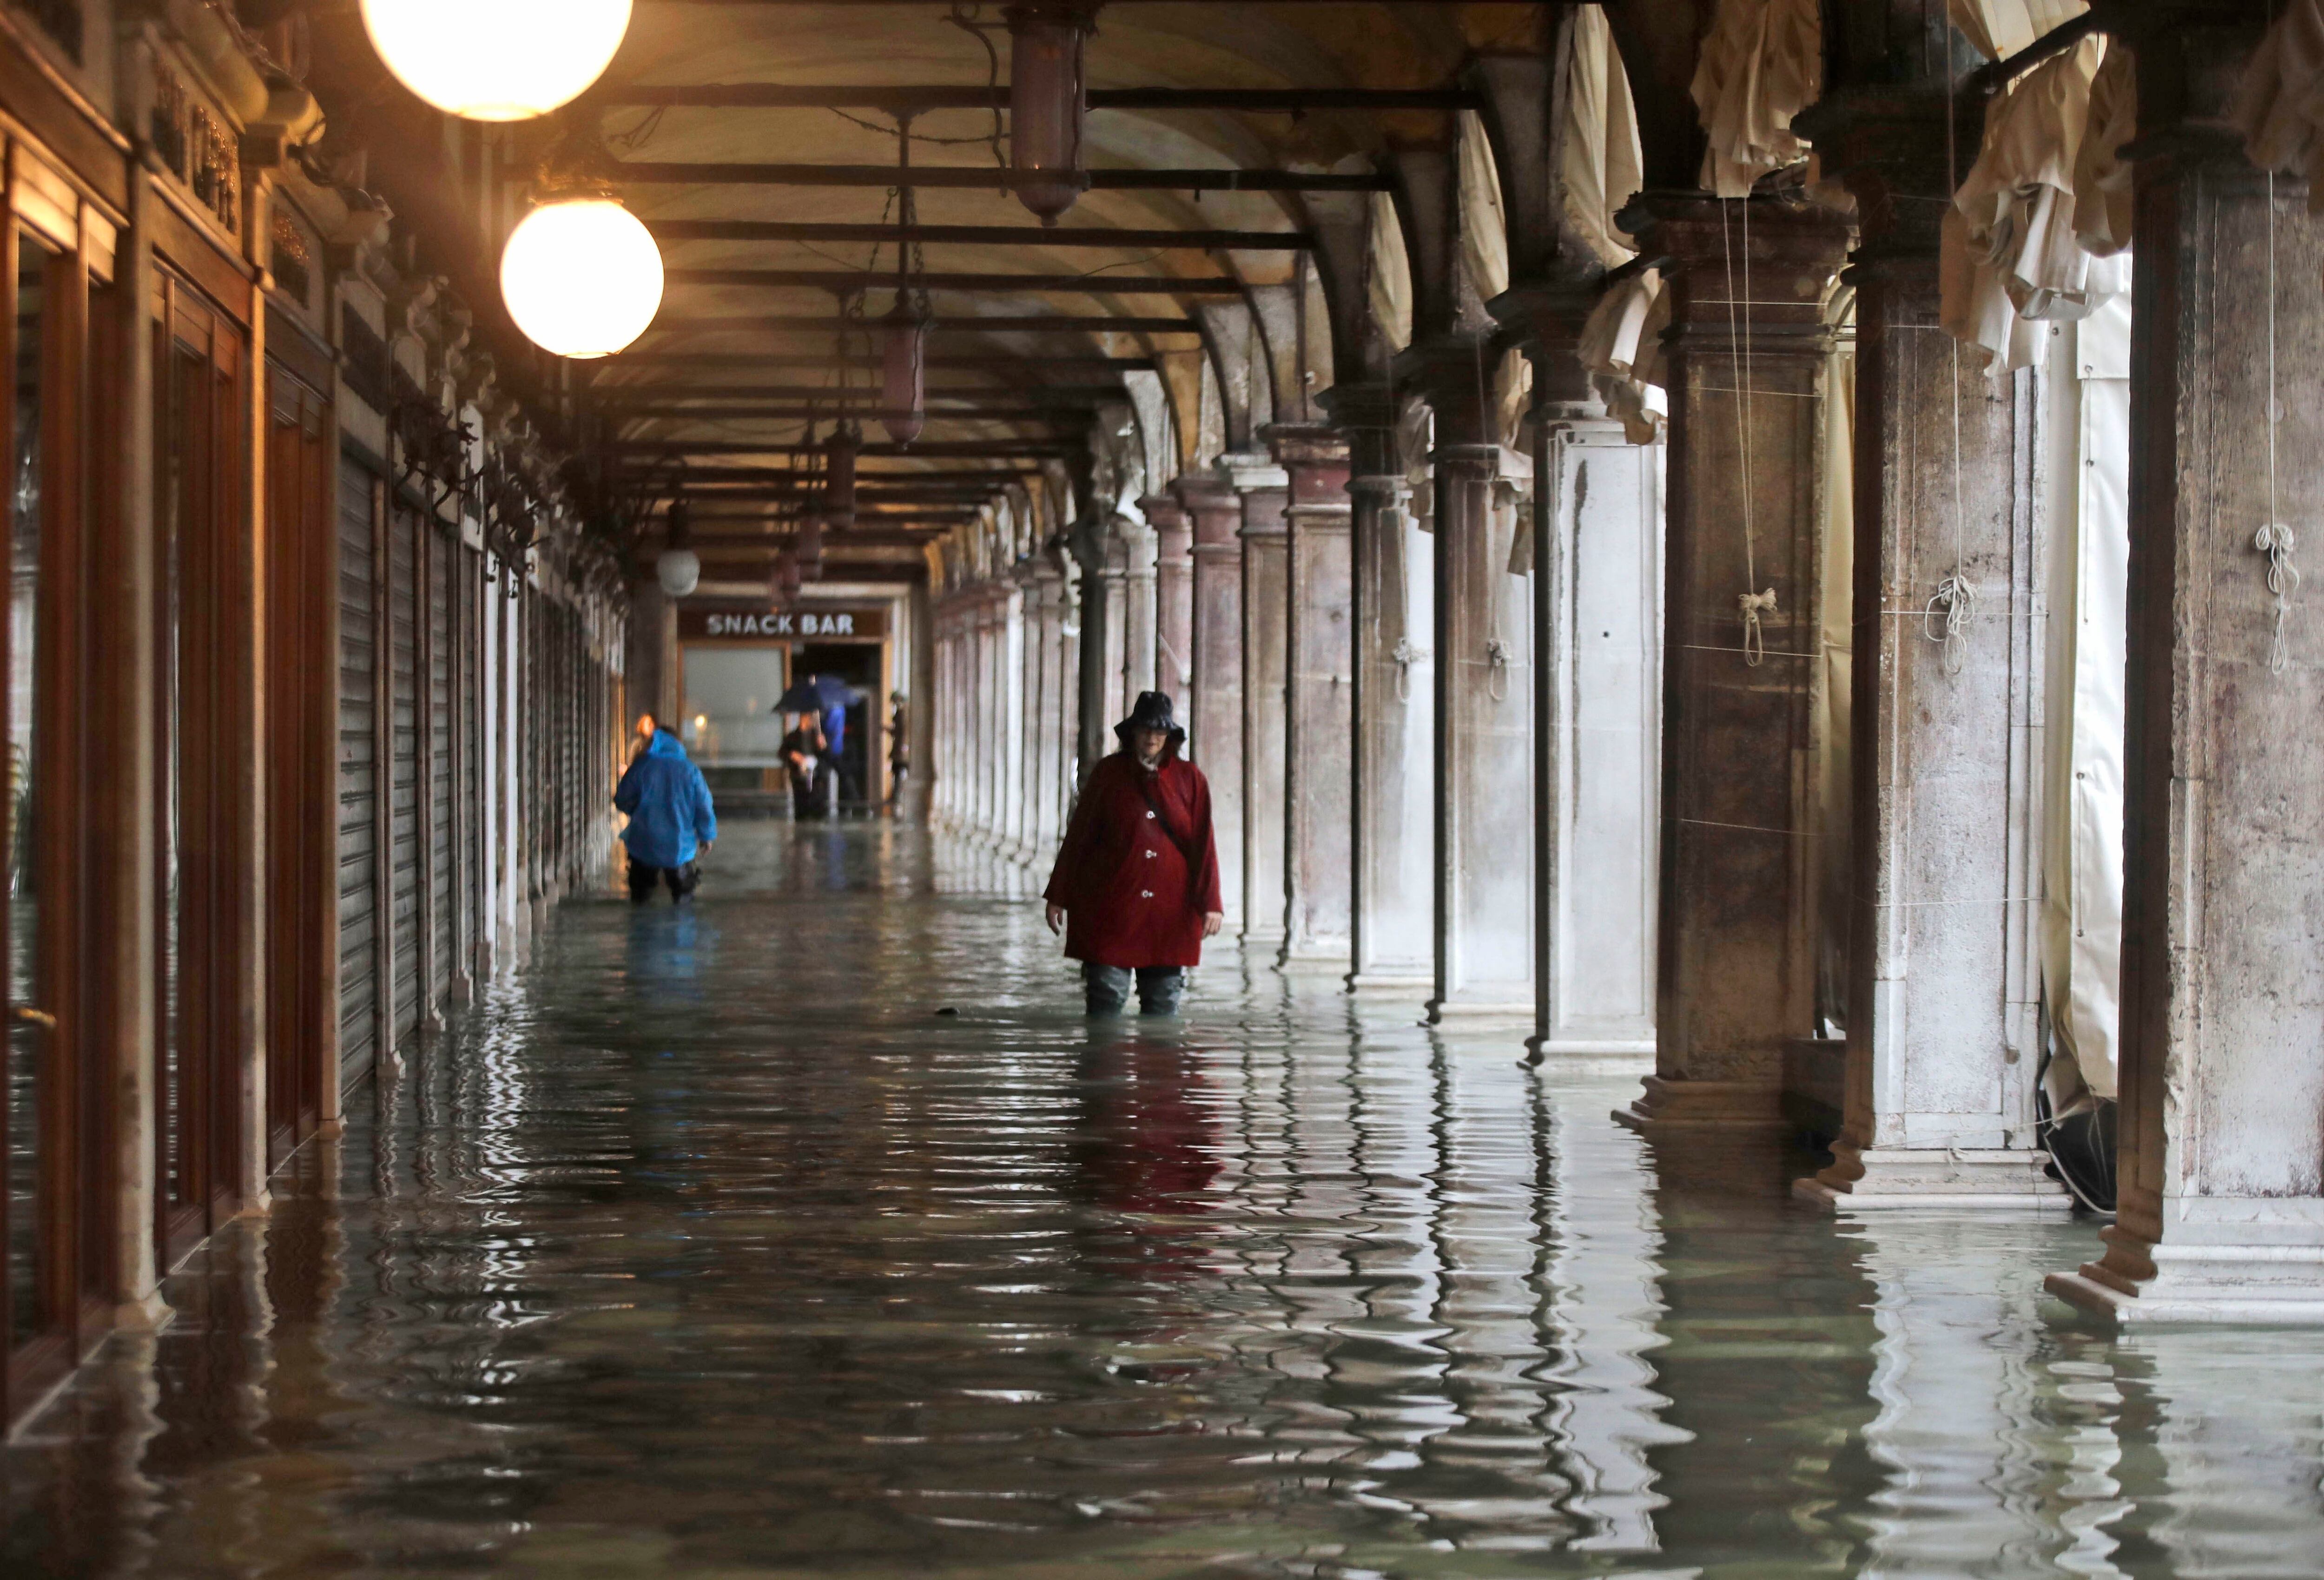 La gente vadea a través del agua causada por una marea alta en Venecia (Foto AP/Luca Bruno)